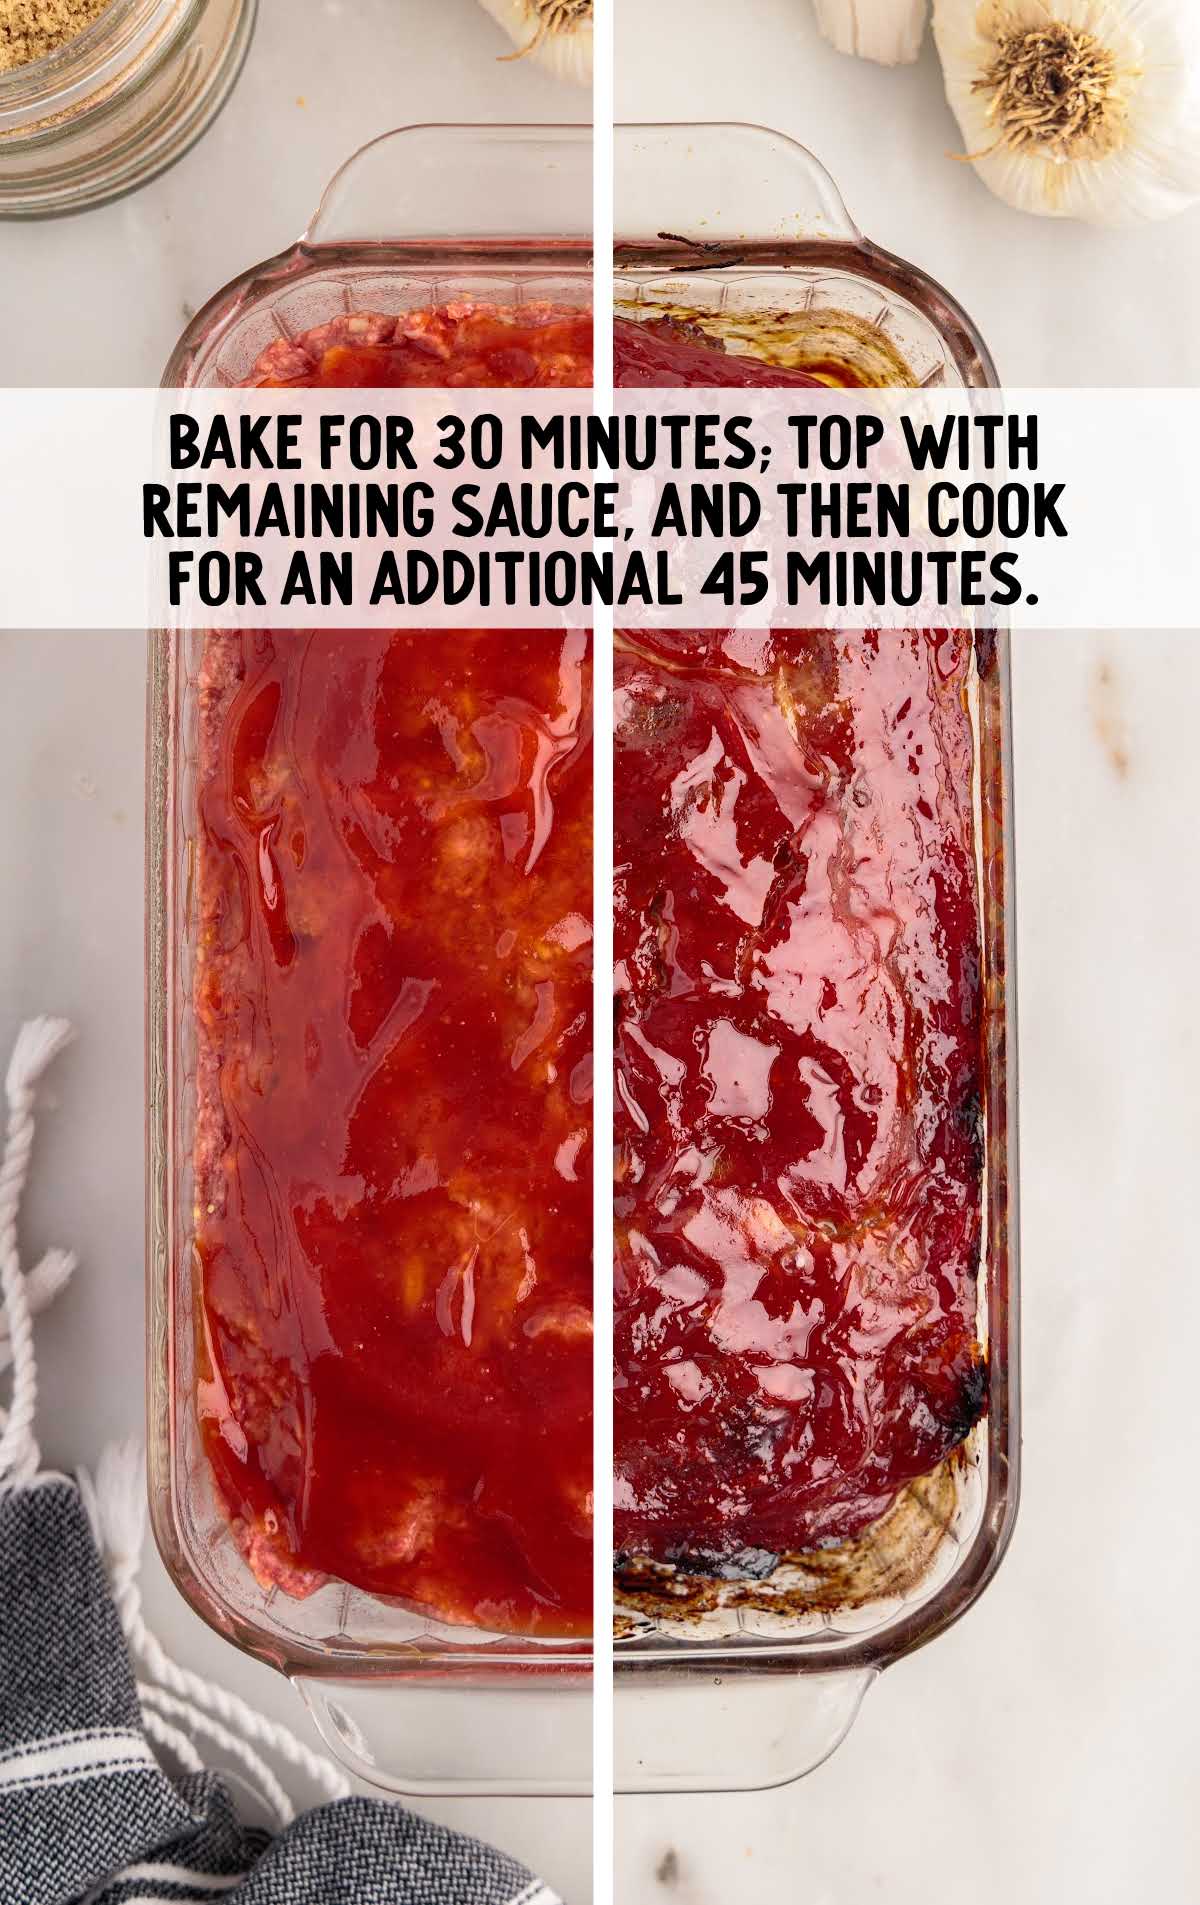 bake meatloaf for 30 minutes